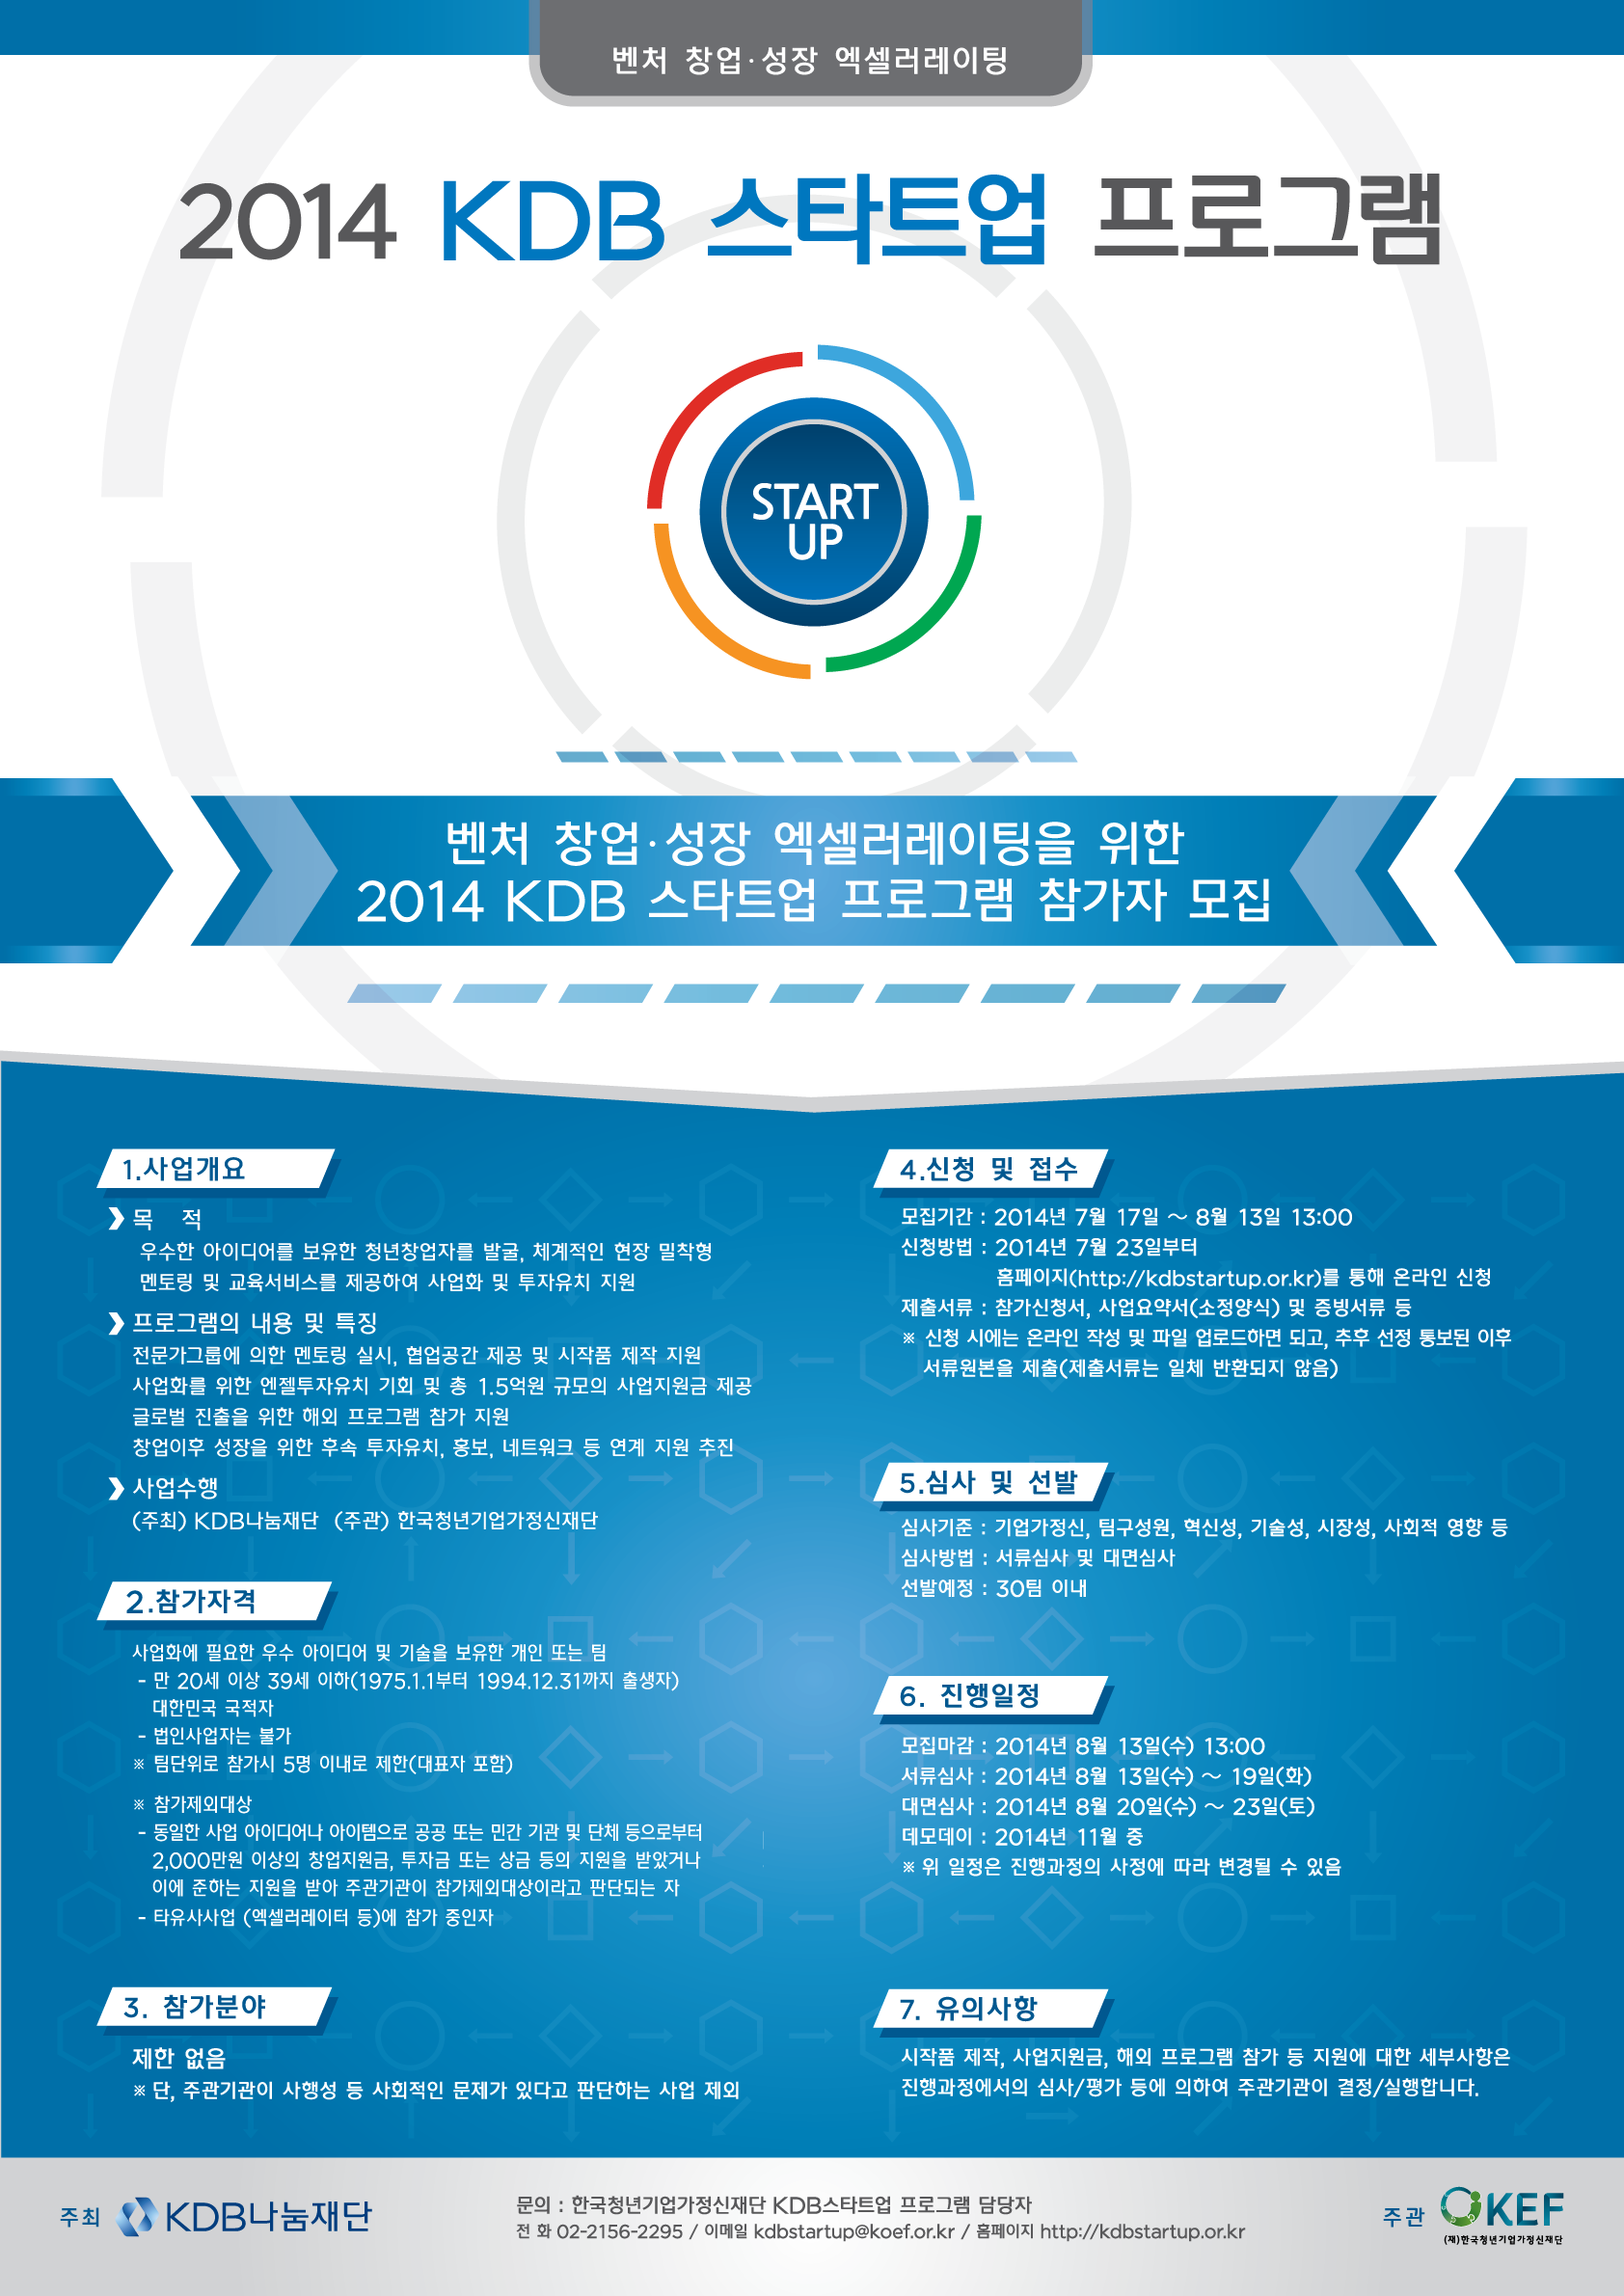 2. 2014 KDB 스타트업 프로그램 포스터